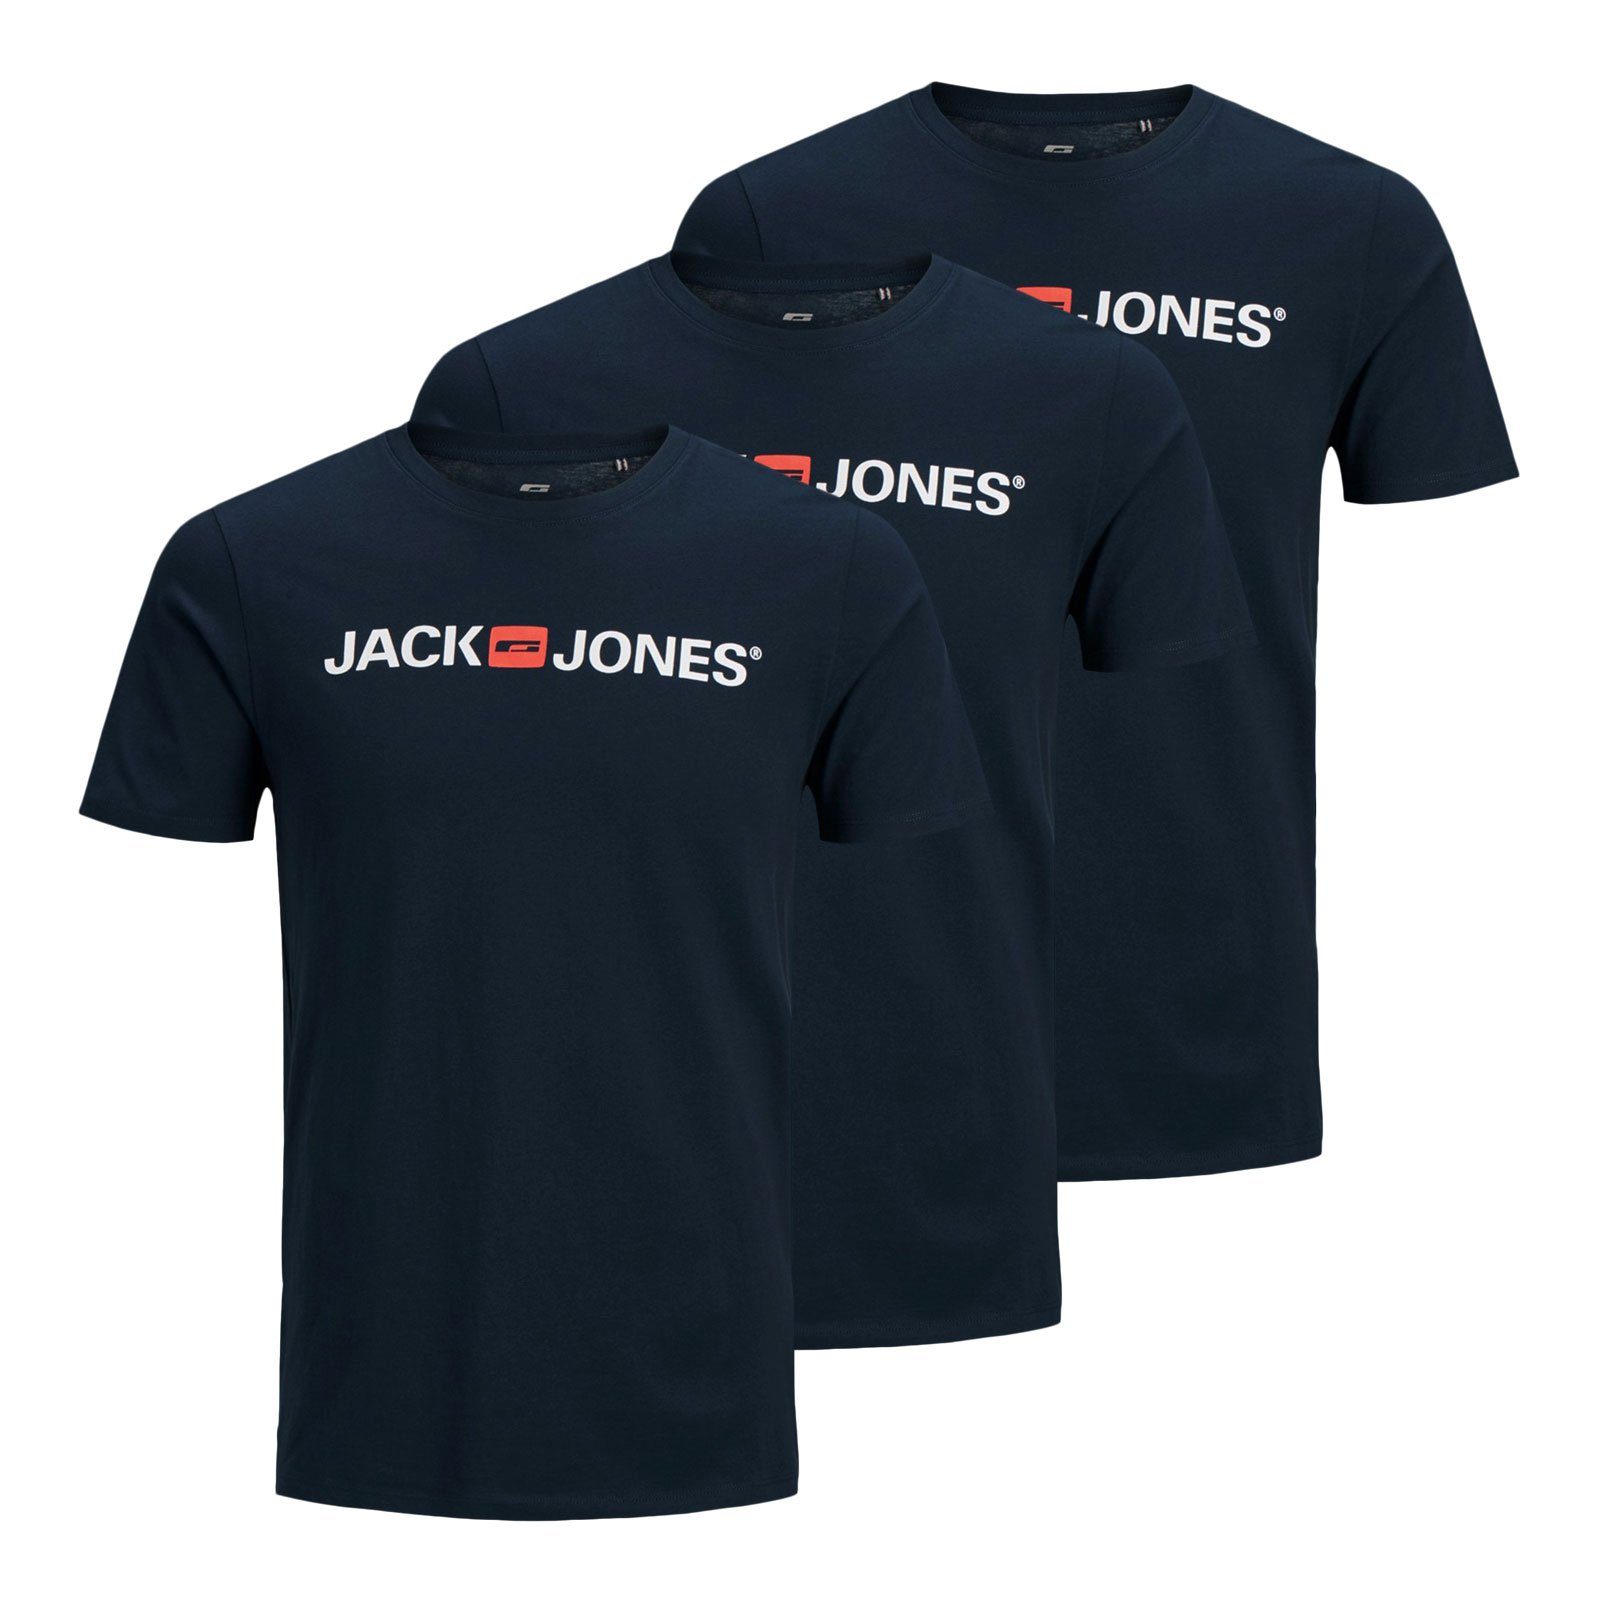 Jack & Jones T-Shirt 3er Pack Logo Tee Crew Neck mit Markenschriftzug 12137126 - navy blazer / navy blazer / navy blazer